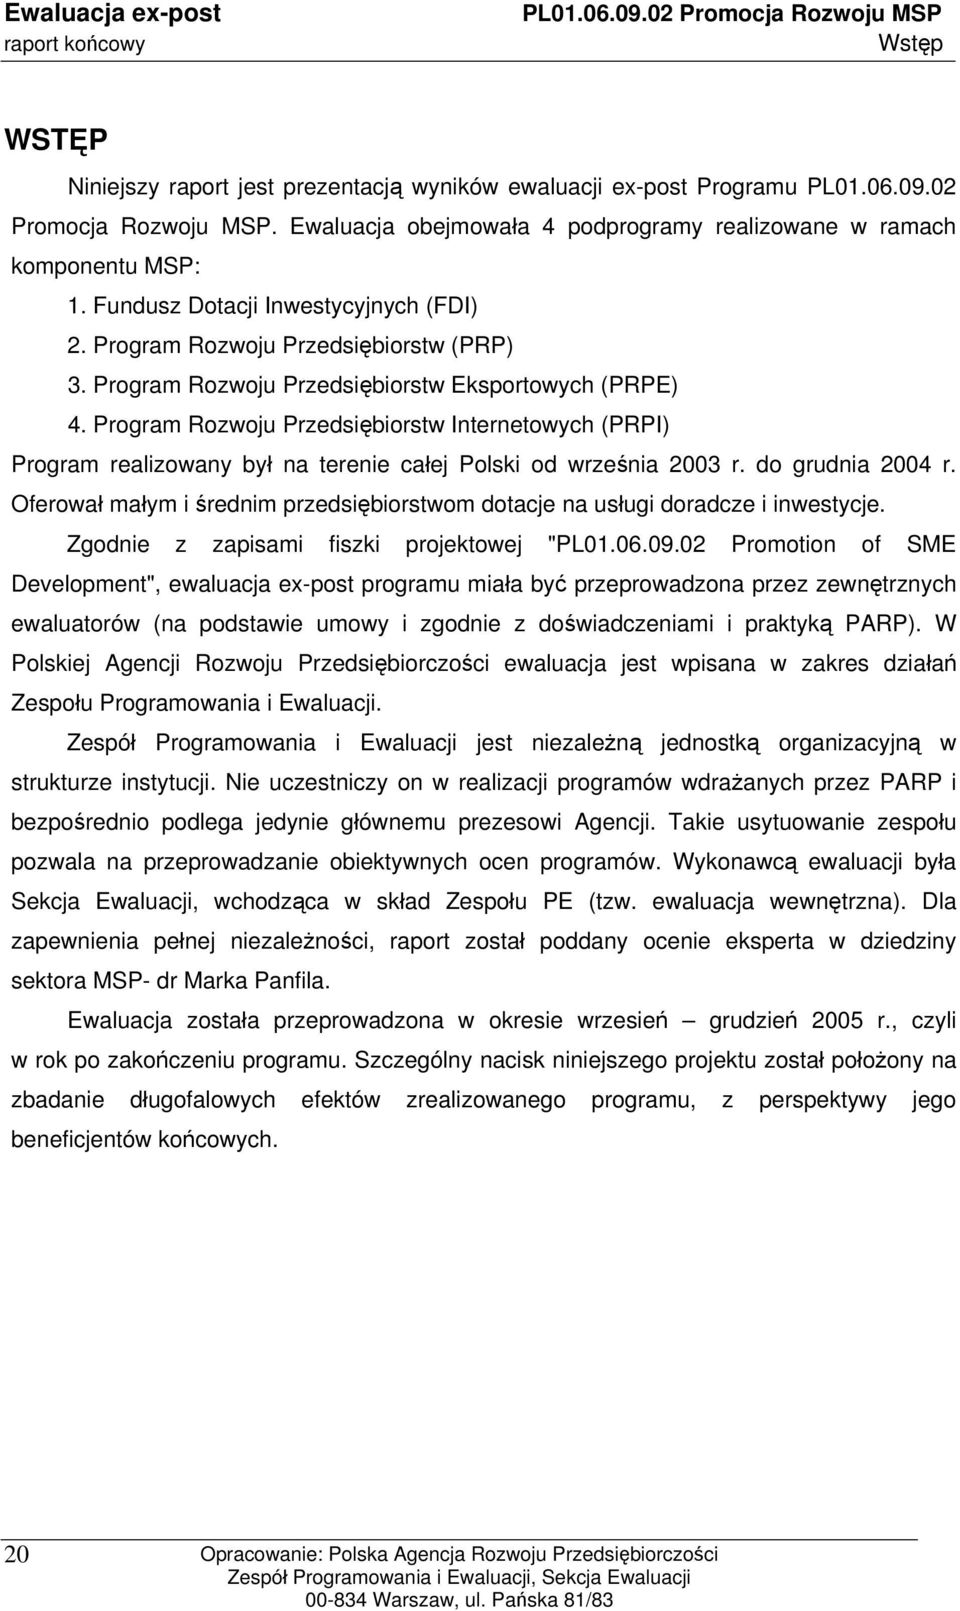 Program Rozwoju Przedsiębiorstw Internetowych (PRPI) Program realizowany był na terenie całej Polski od września 2003 r. do grudnia 2004 r.